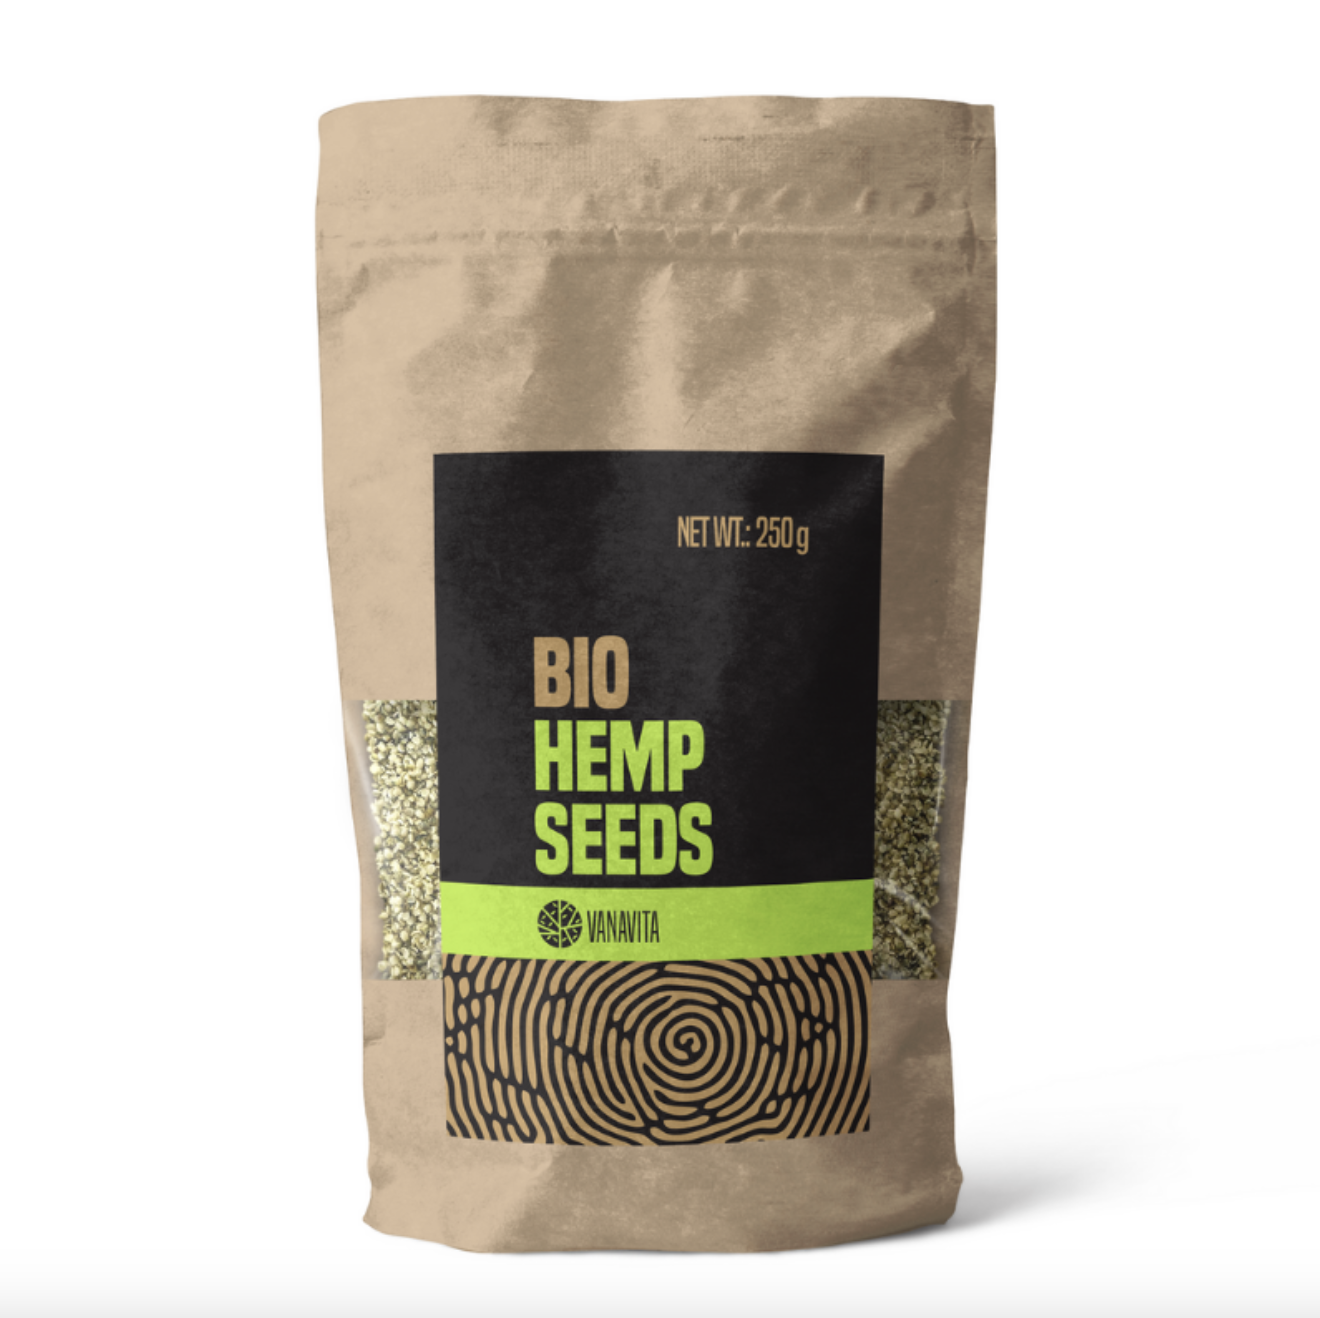 Bio Hemp Seeds from VanaVita